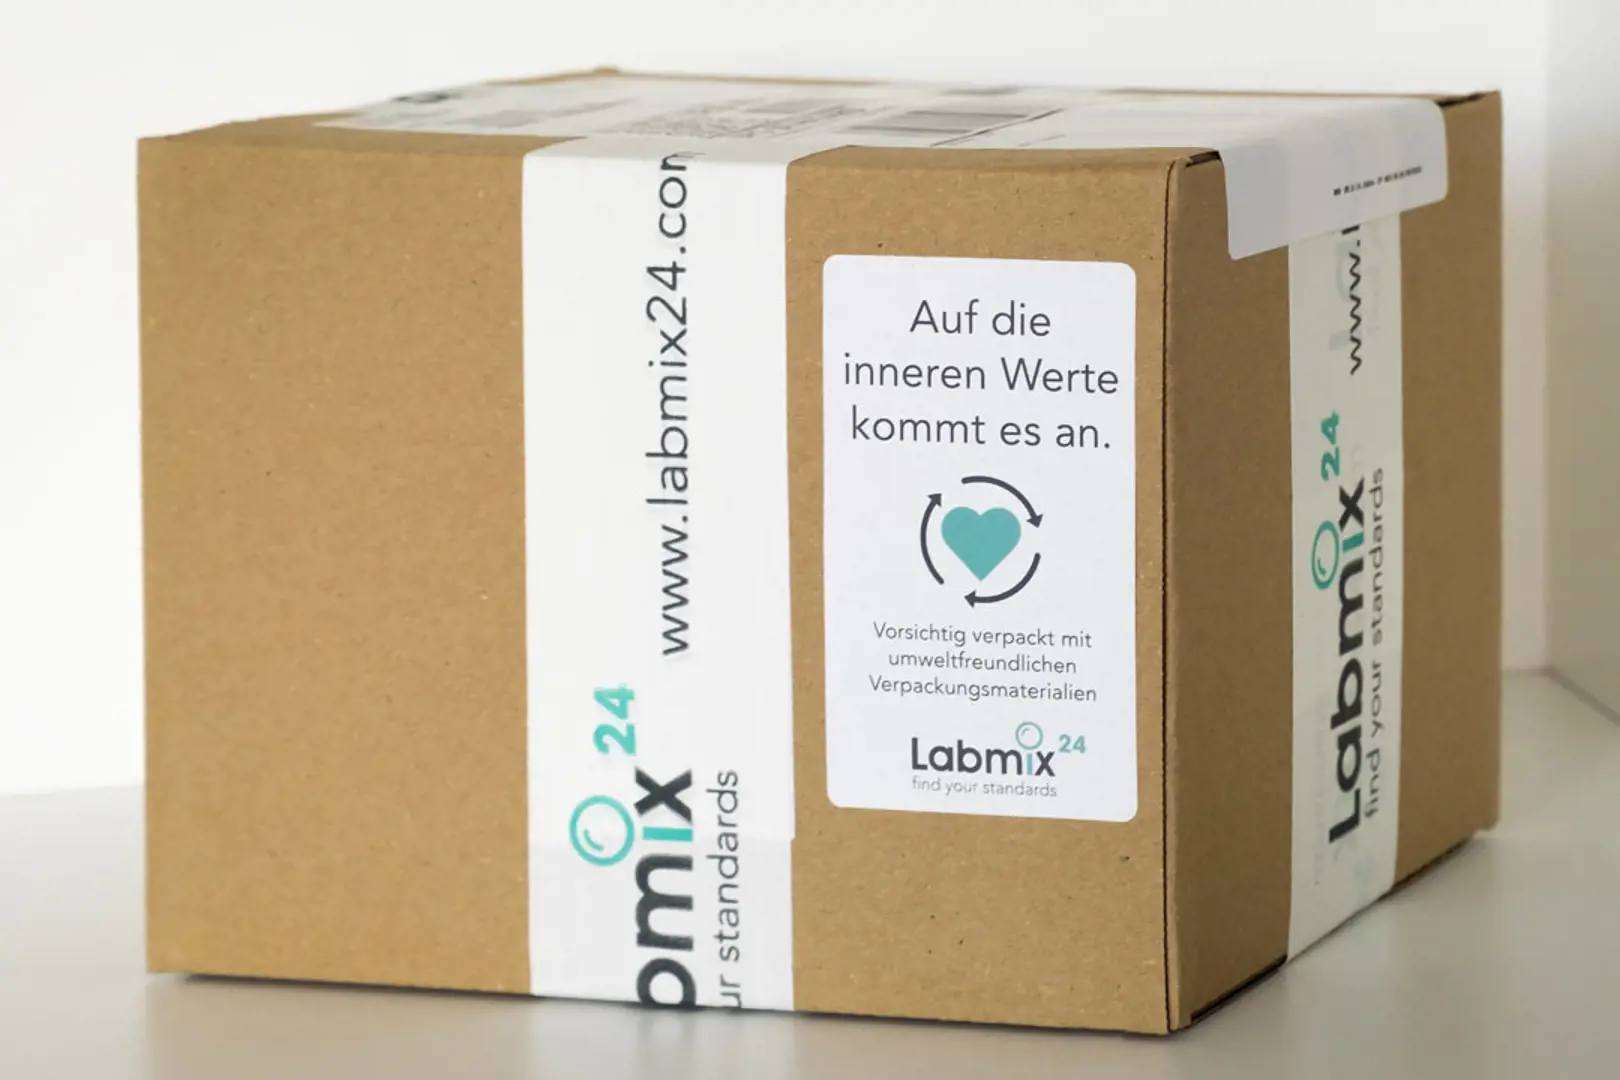 Ein Labmix24 Paket mit umweltfreundlichen Verpackungsmaterialien